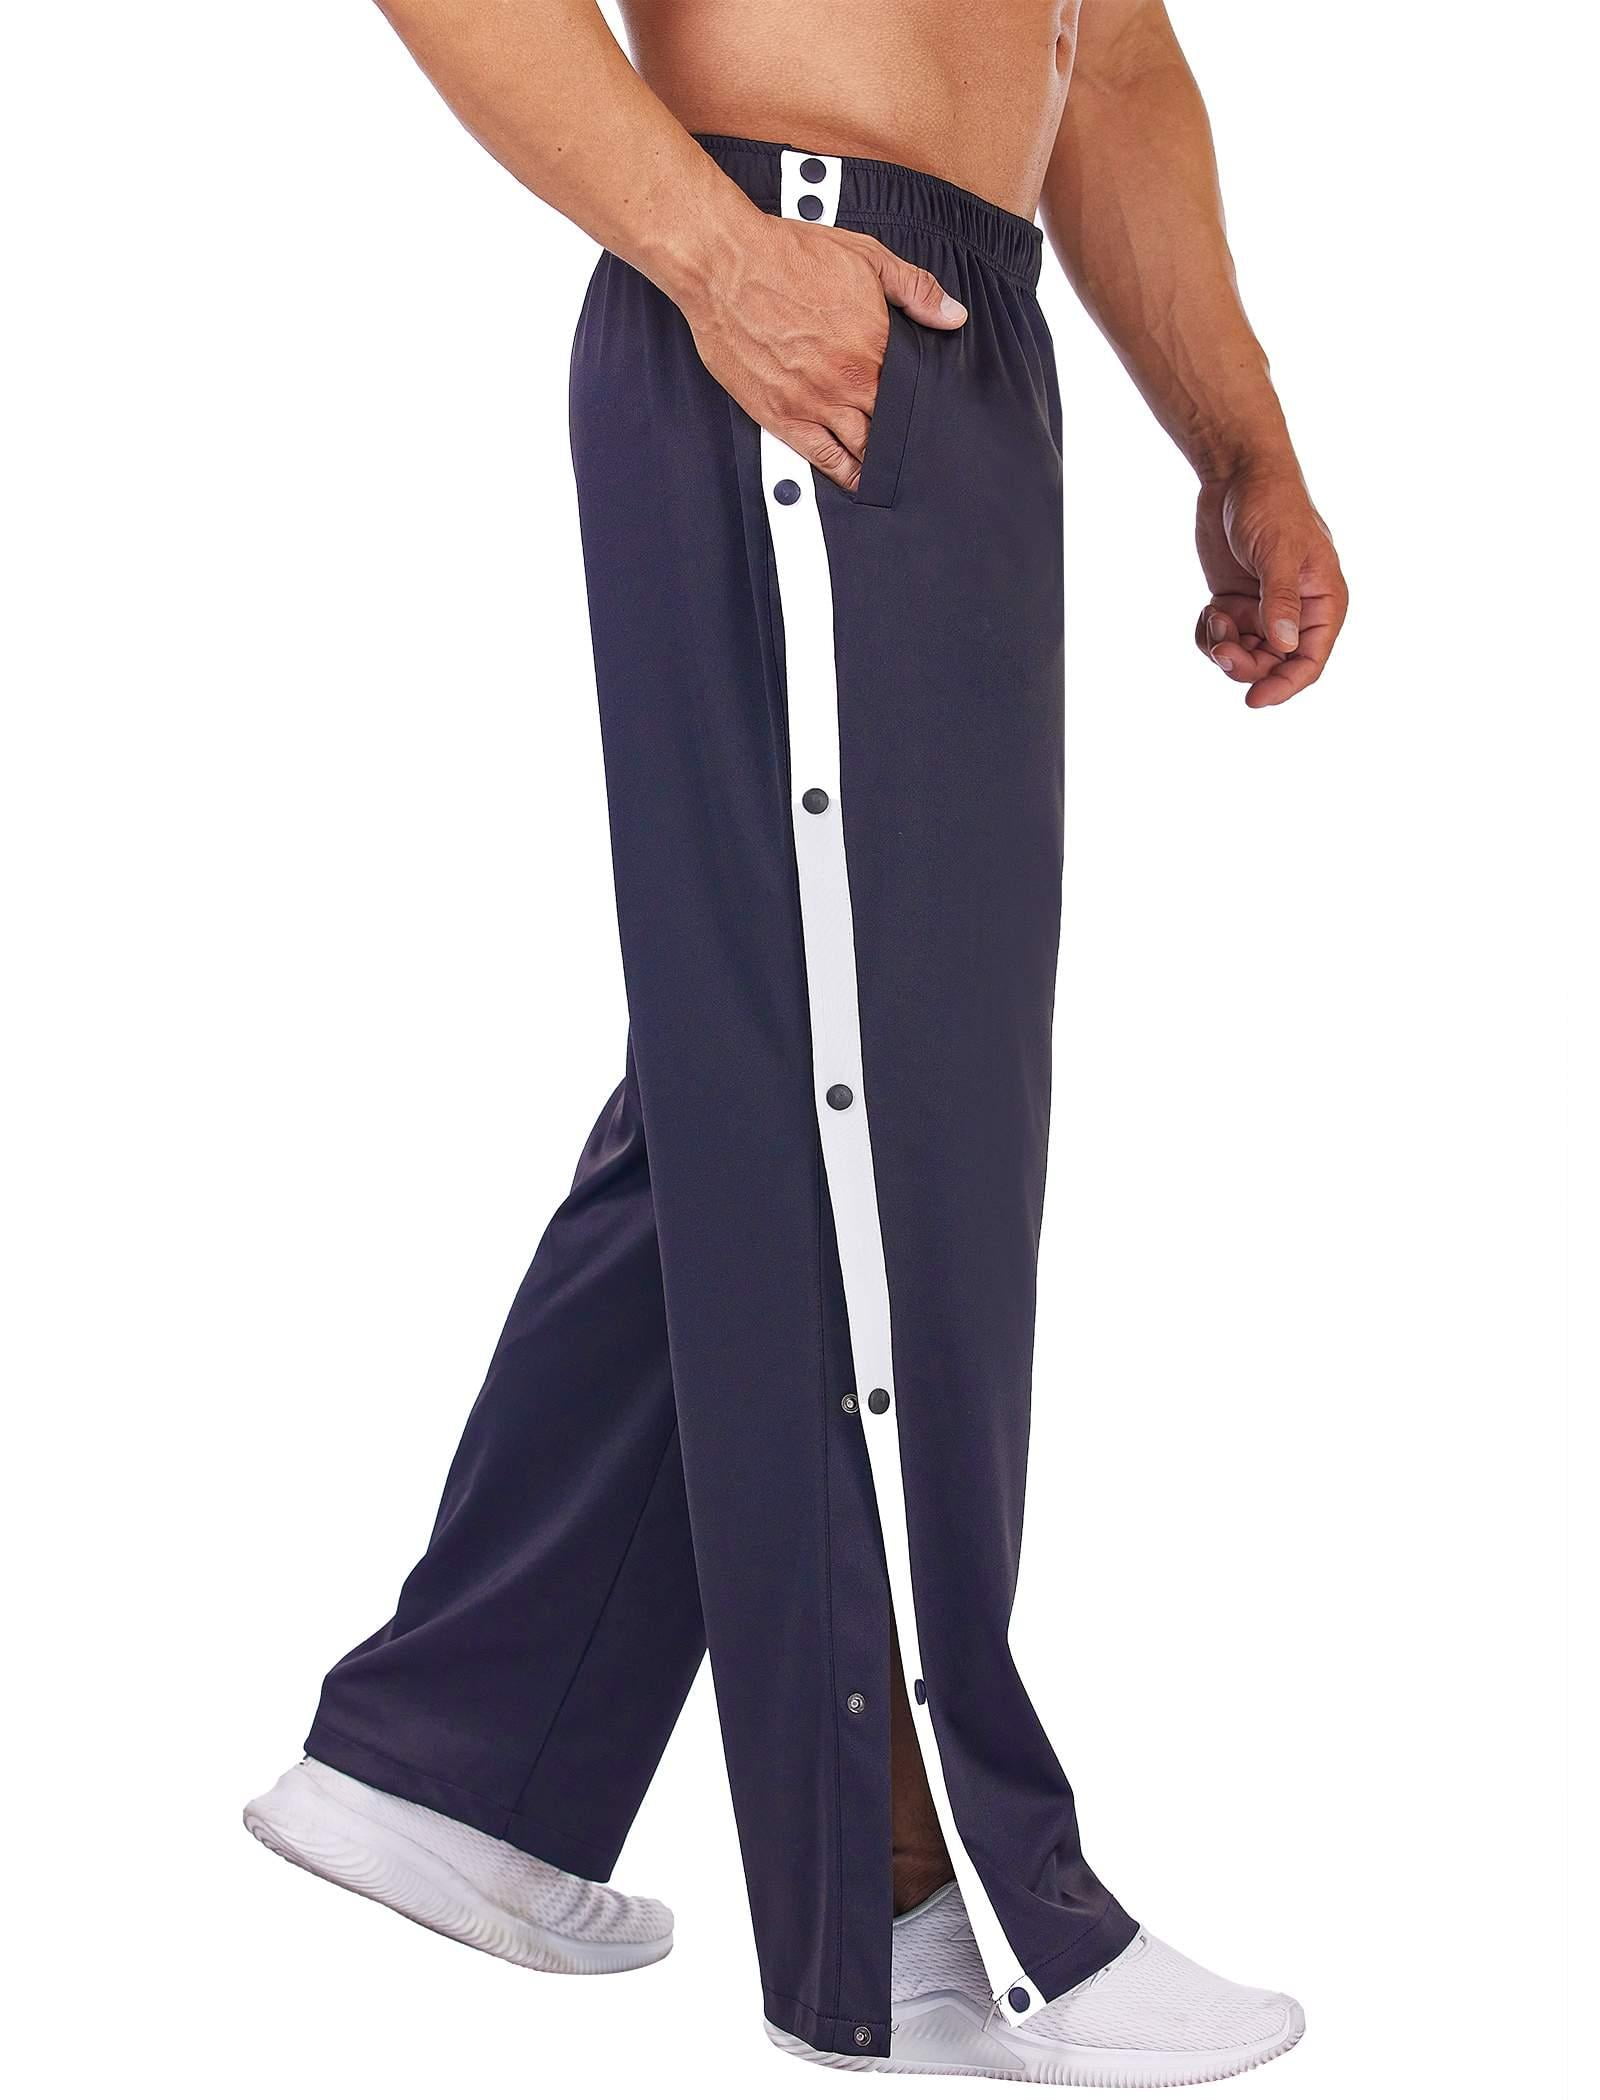 OGLCCG Men's Casual Cotton Sweatpants Ankle-Length Elastic Waist Loose Fit  Lounge Pants Trendy Solid Color Sports Pants 